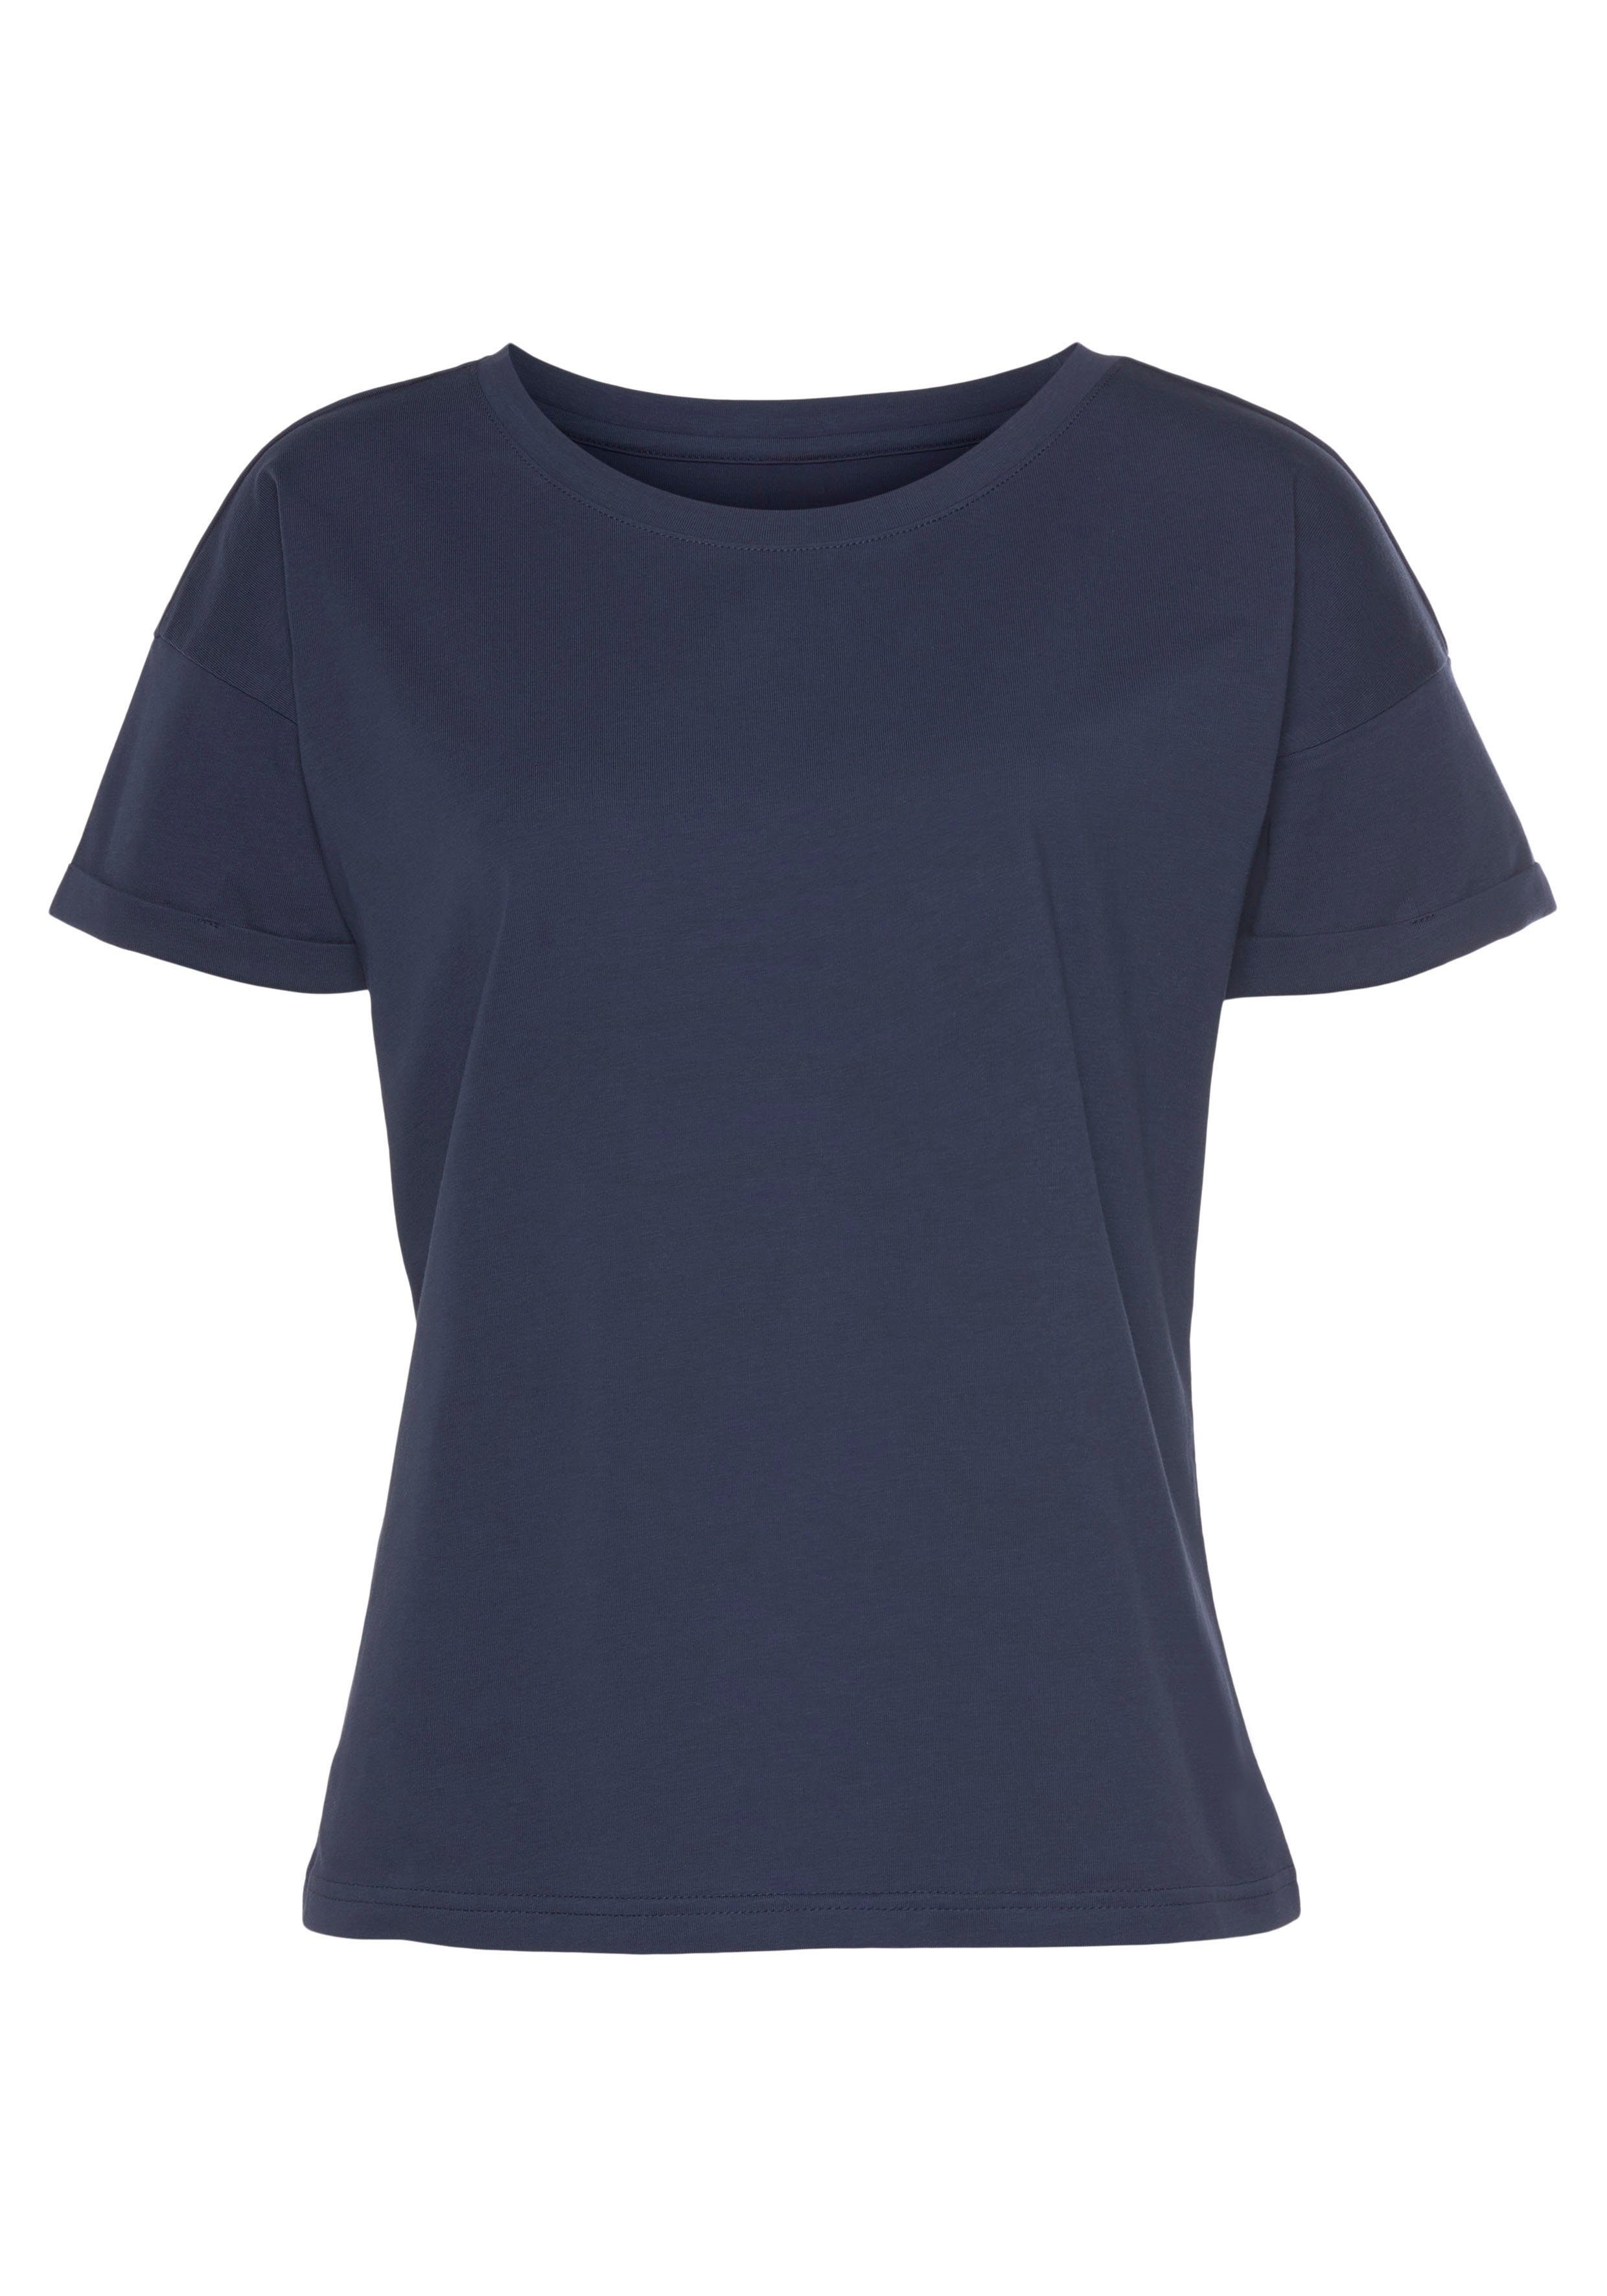 H.I.S T-Shirt mit Ärmelaufschlag Stil, im navy maritimen Loungewear